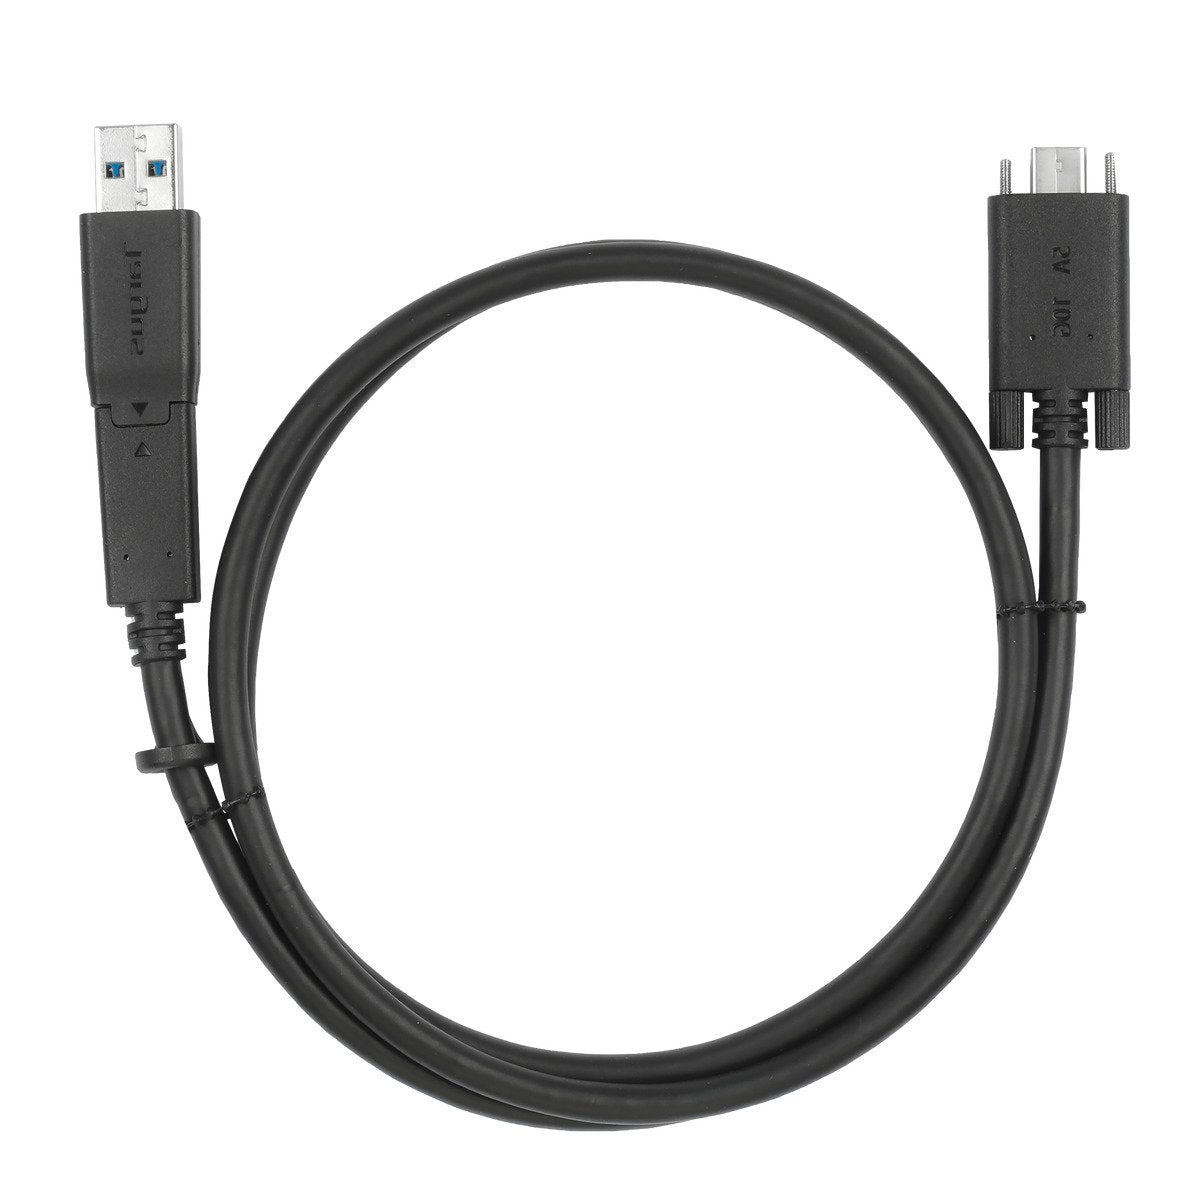 CABLE USB TIPO C DE CARGA RAPIDA VCOM CU287C - Intelmax